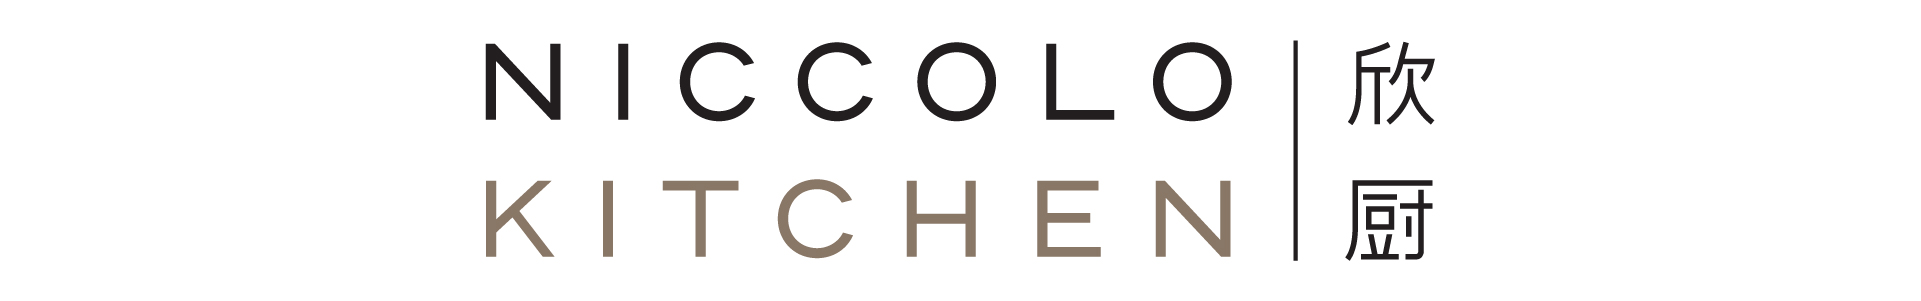 niccolo kitchen logo